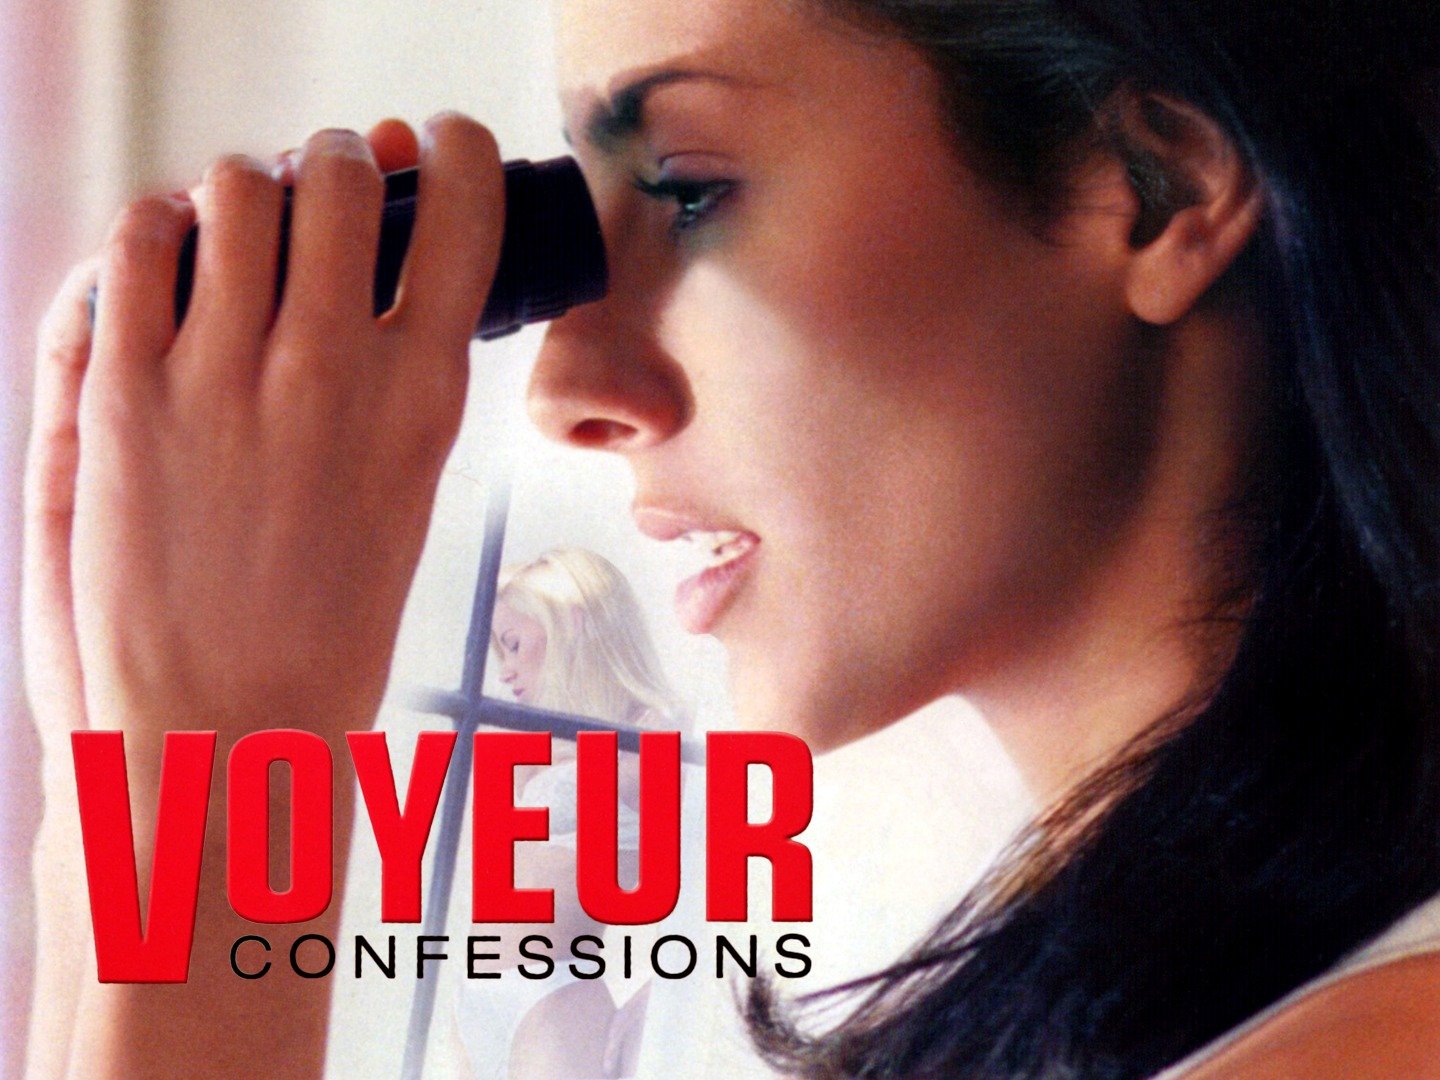 voyeur confessions 2001 torrent